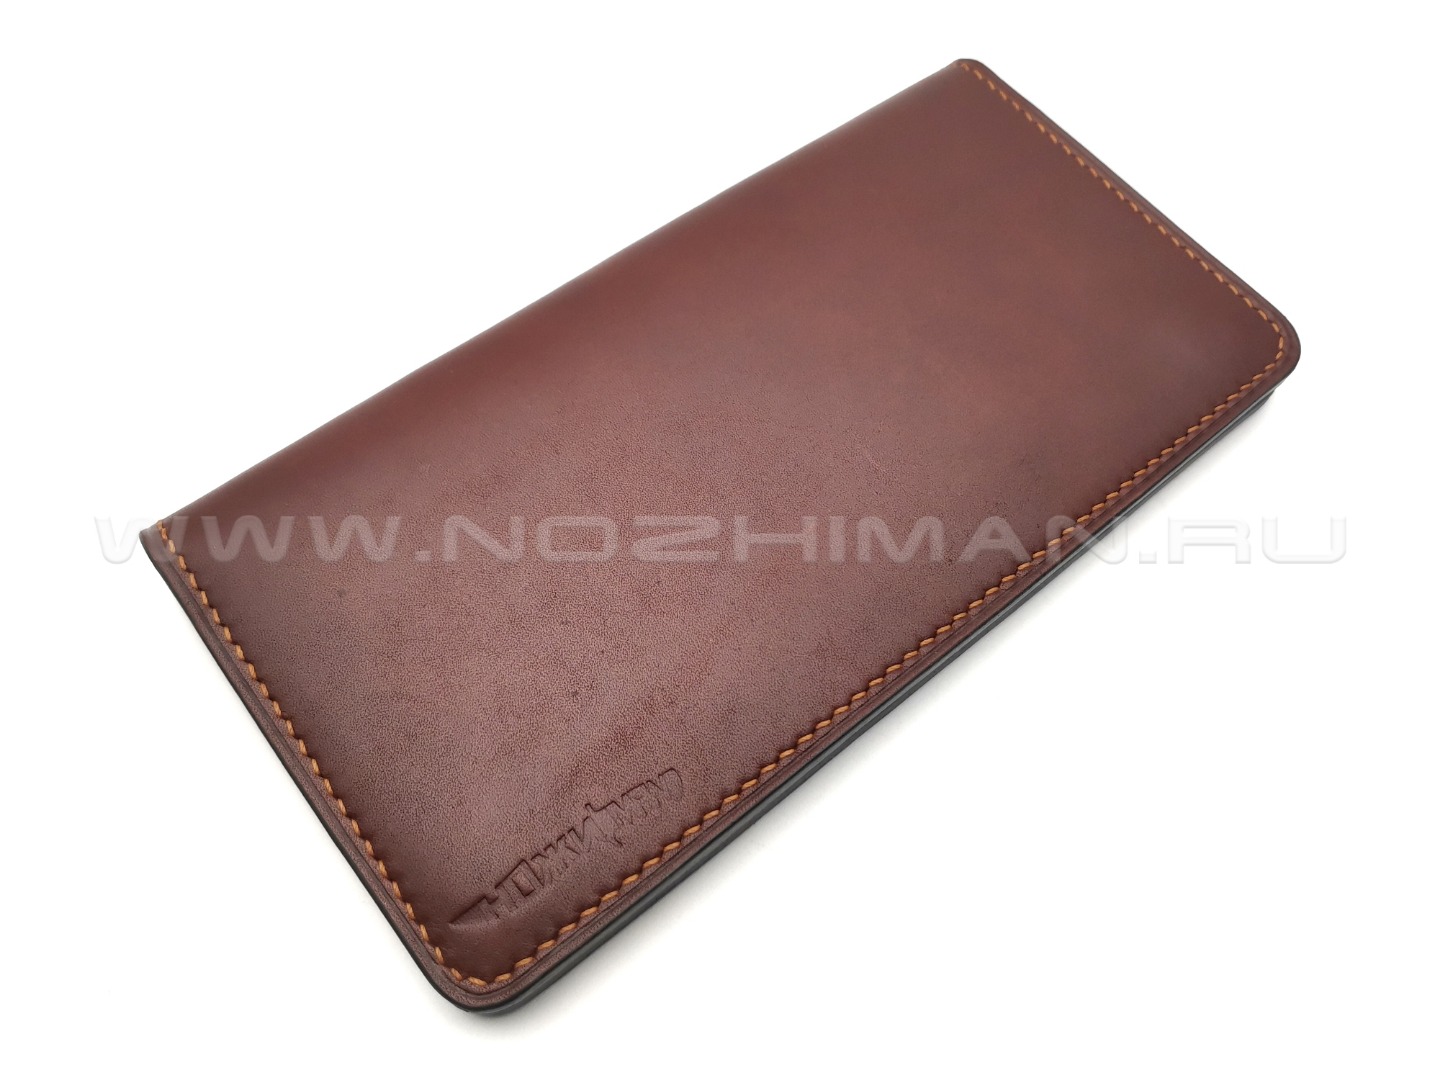 Лонгер из натуральной кожи, 4 карты, 3 кармана NK0093 коричневый